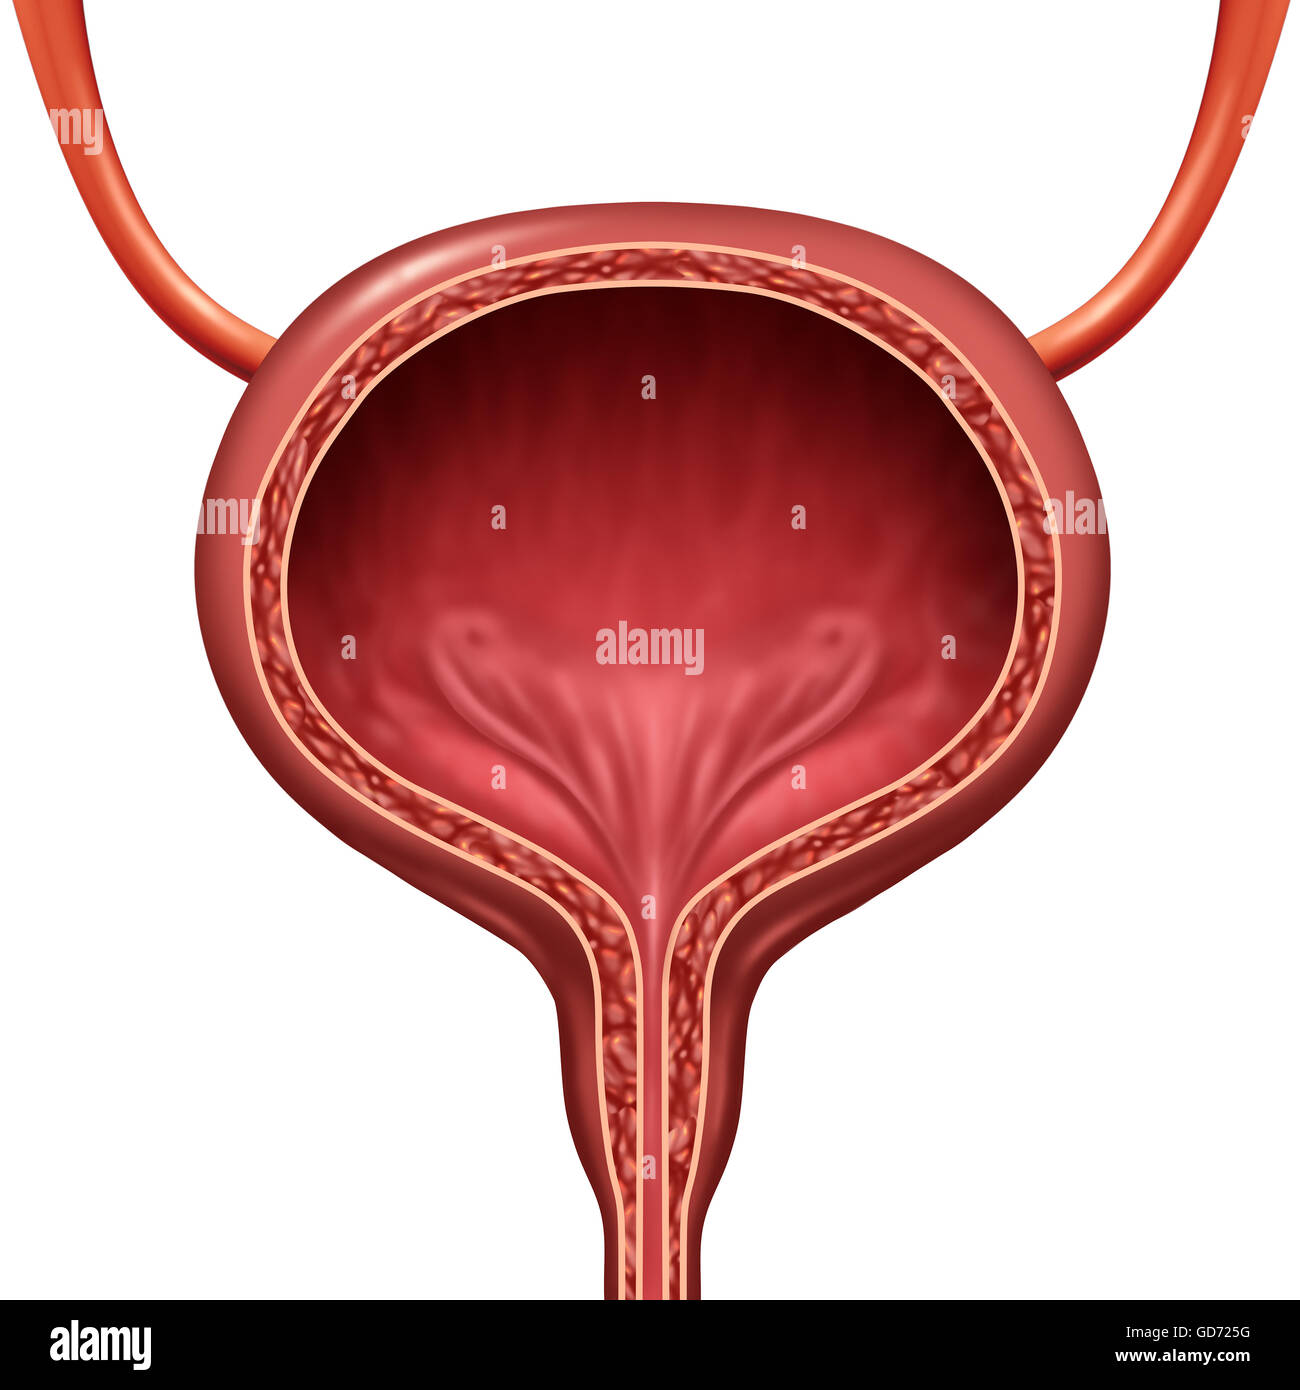 Umano della vescica urinaria organo anatomico concetto come 3D'illustrazione in sezione della parte anatomica del corpo. Foto Stock